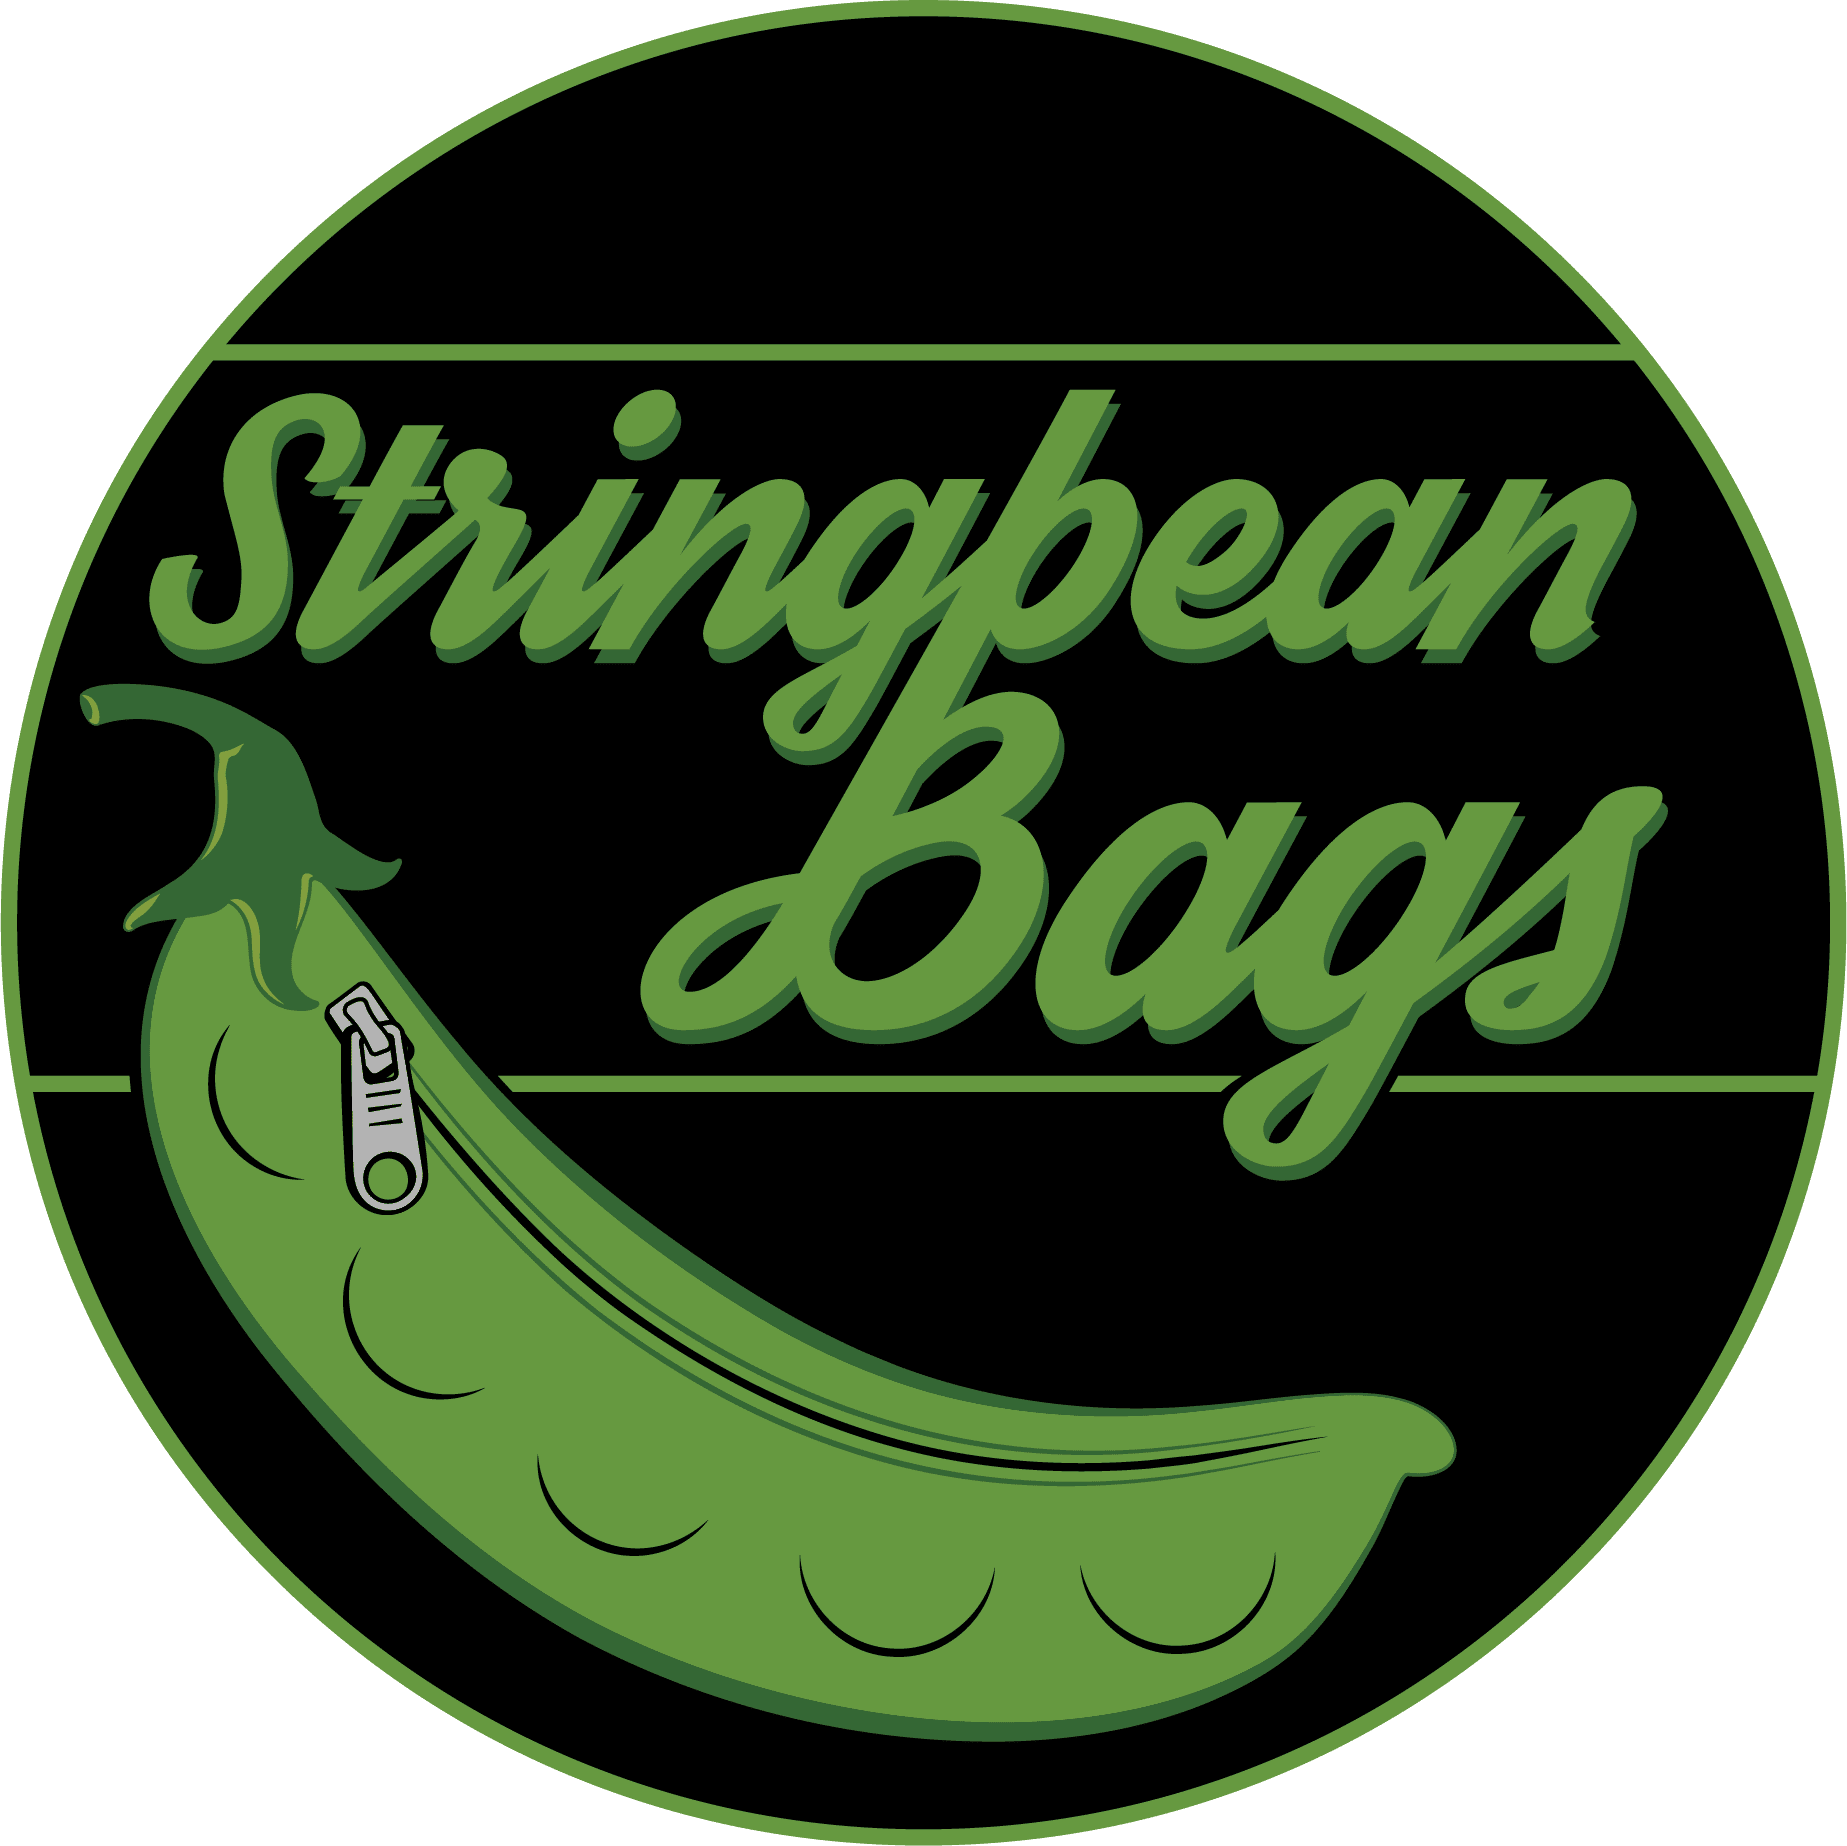 Stringbean Bags